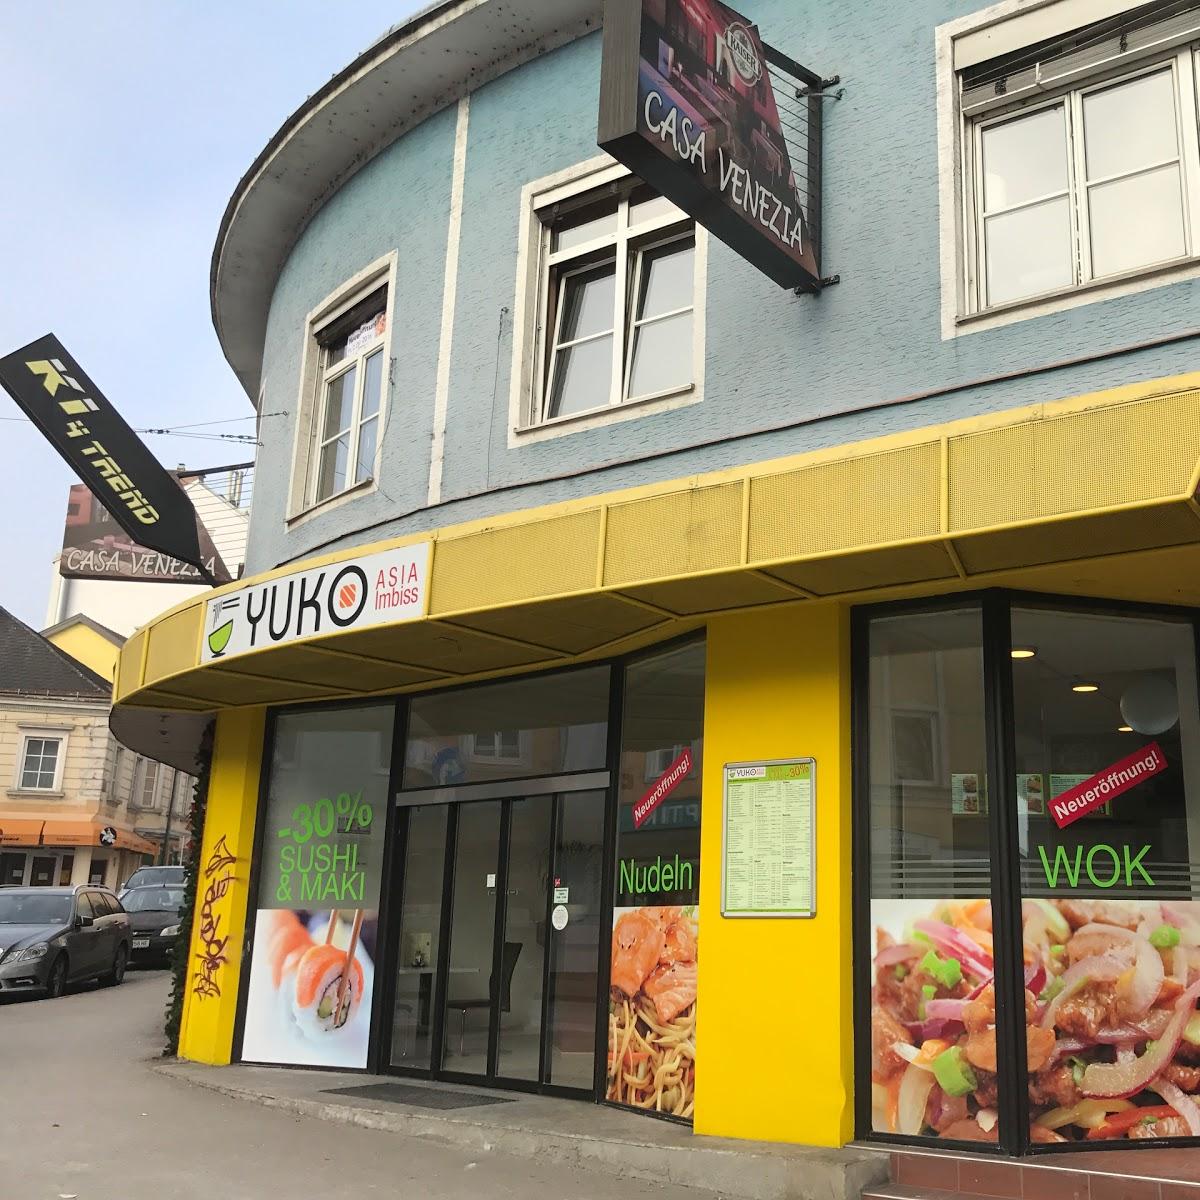 Restaurant "Yuko ASIA Imbiss" in Amstetten